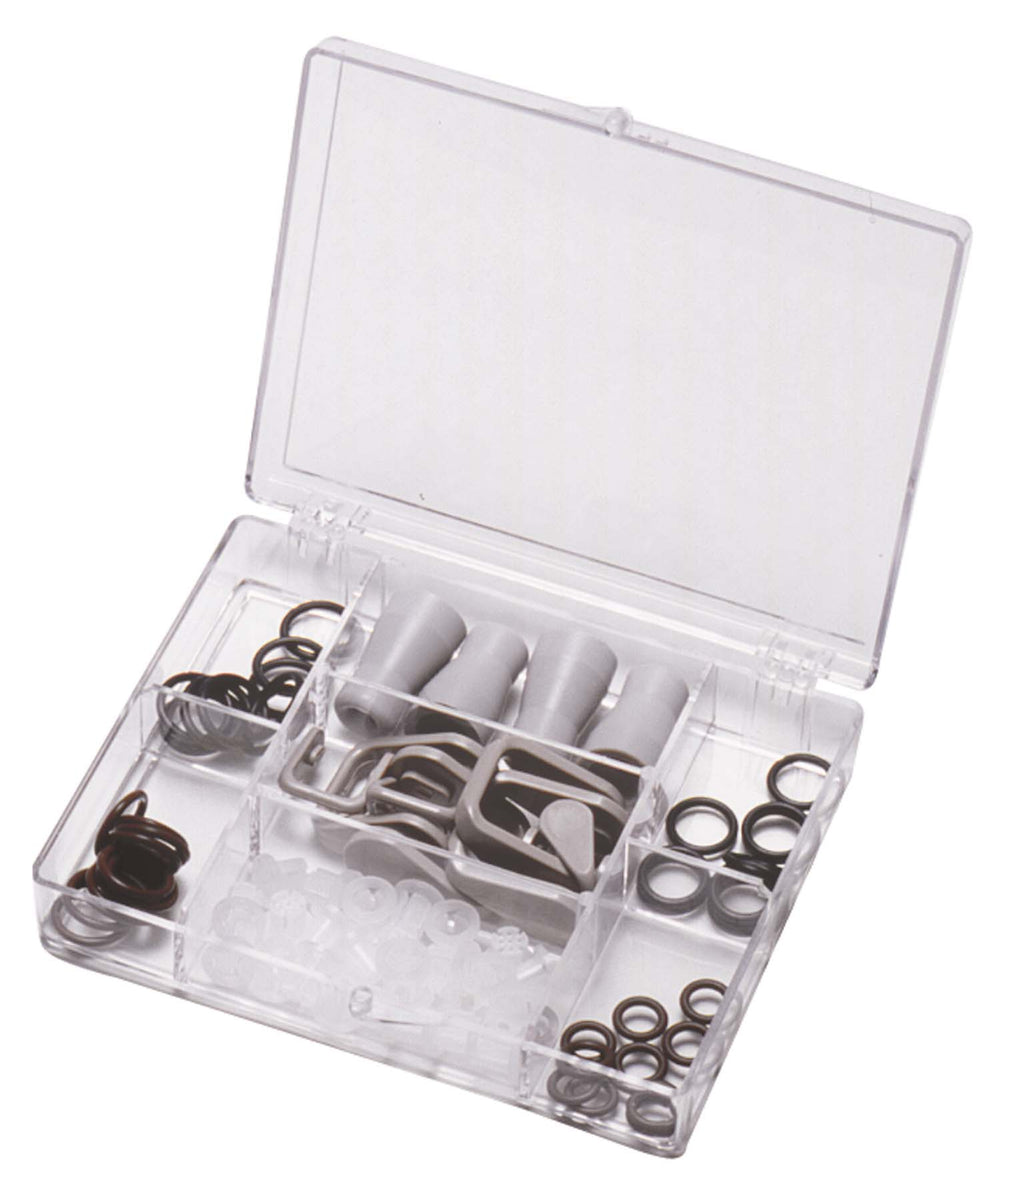 O-rings & Repair Kits - American Dental Accessories, Inc.